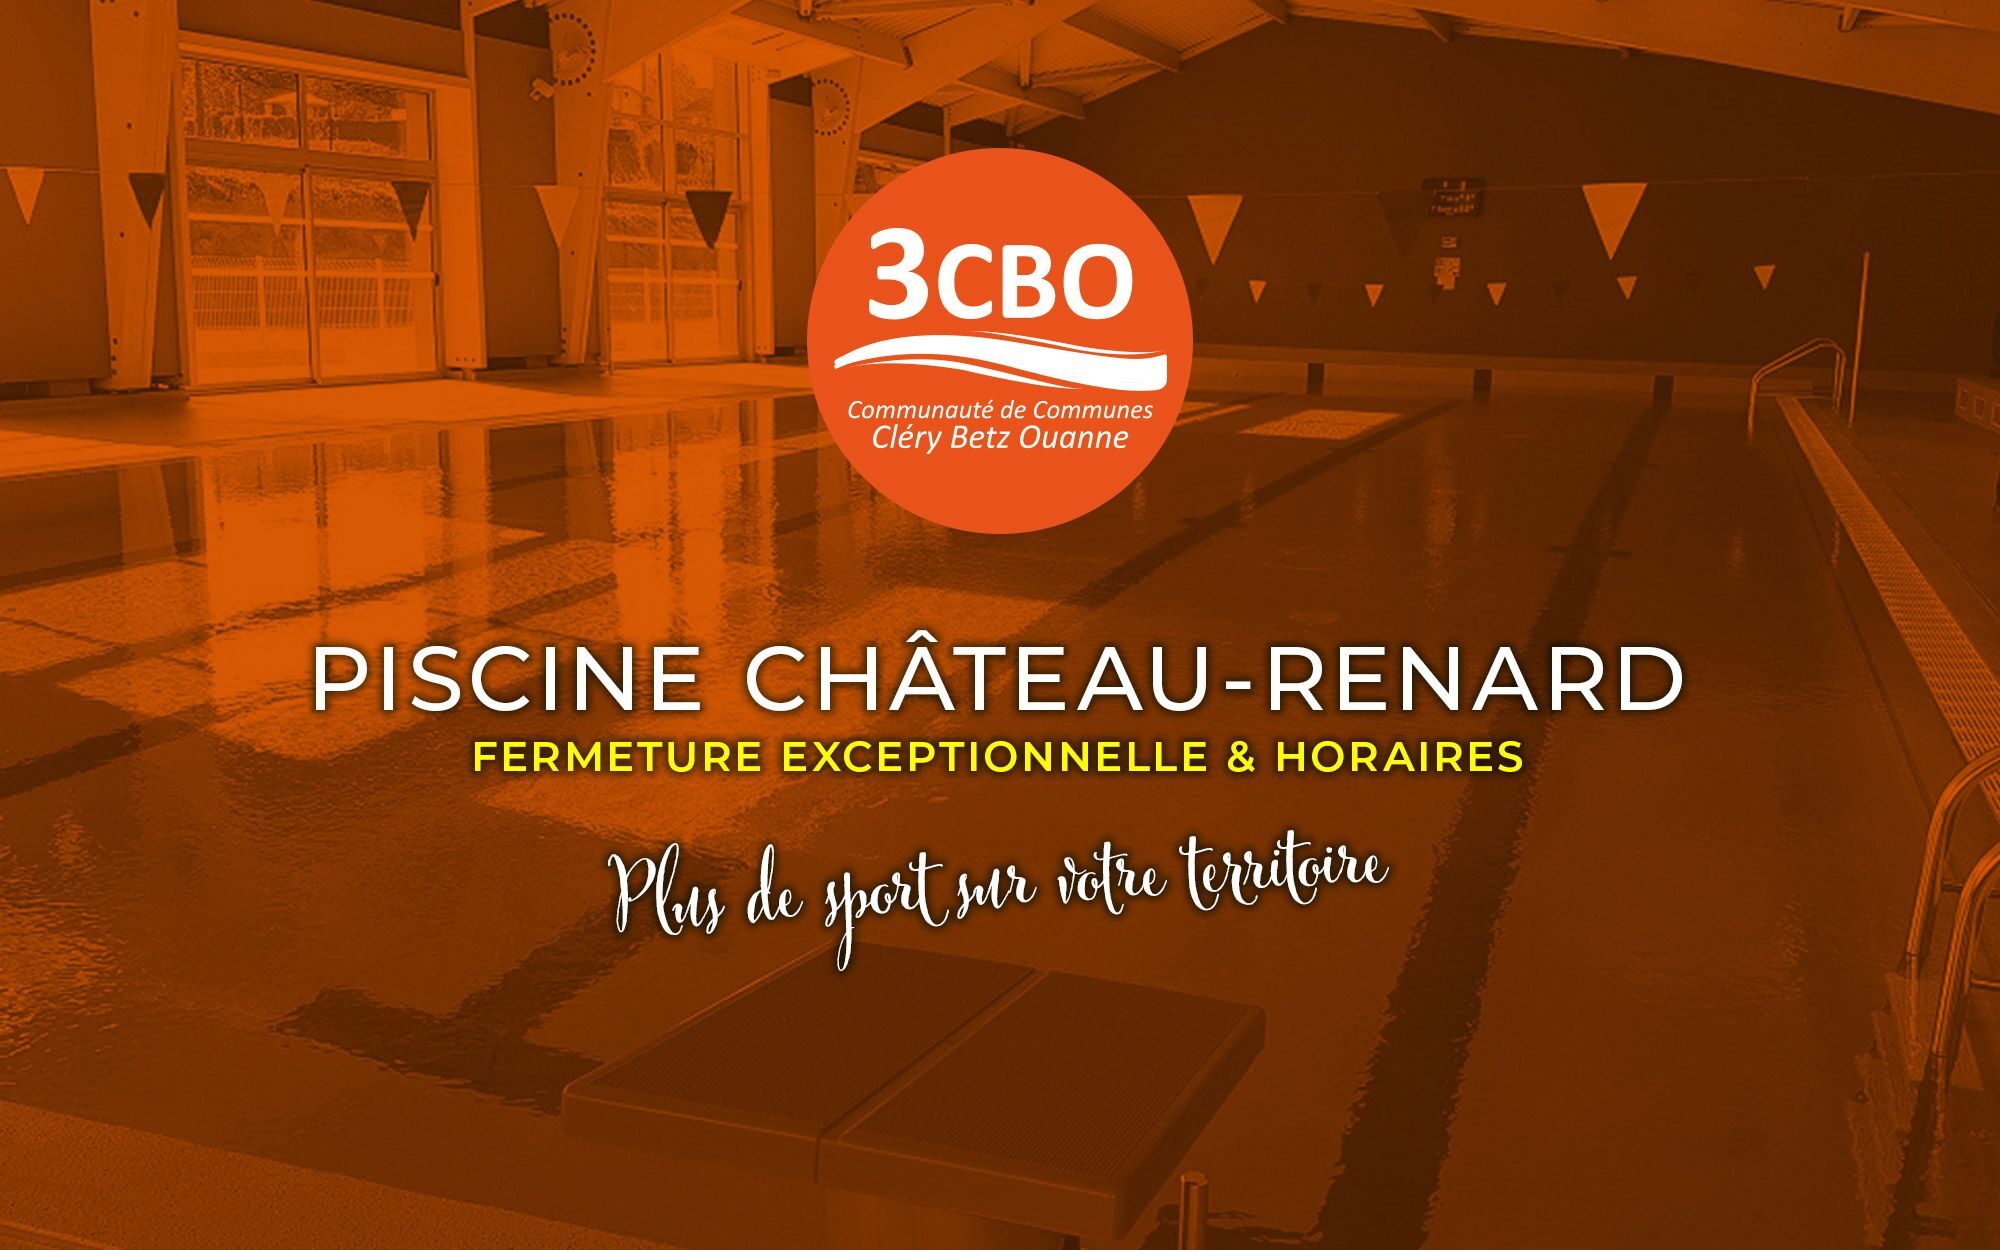 Piscine Château-Renard fermeture Exceptionnel et horaires 3cbo